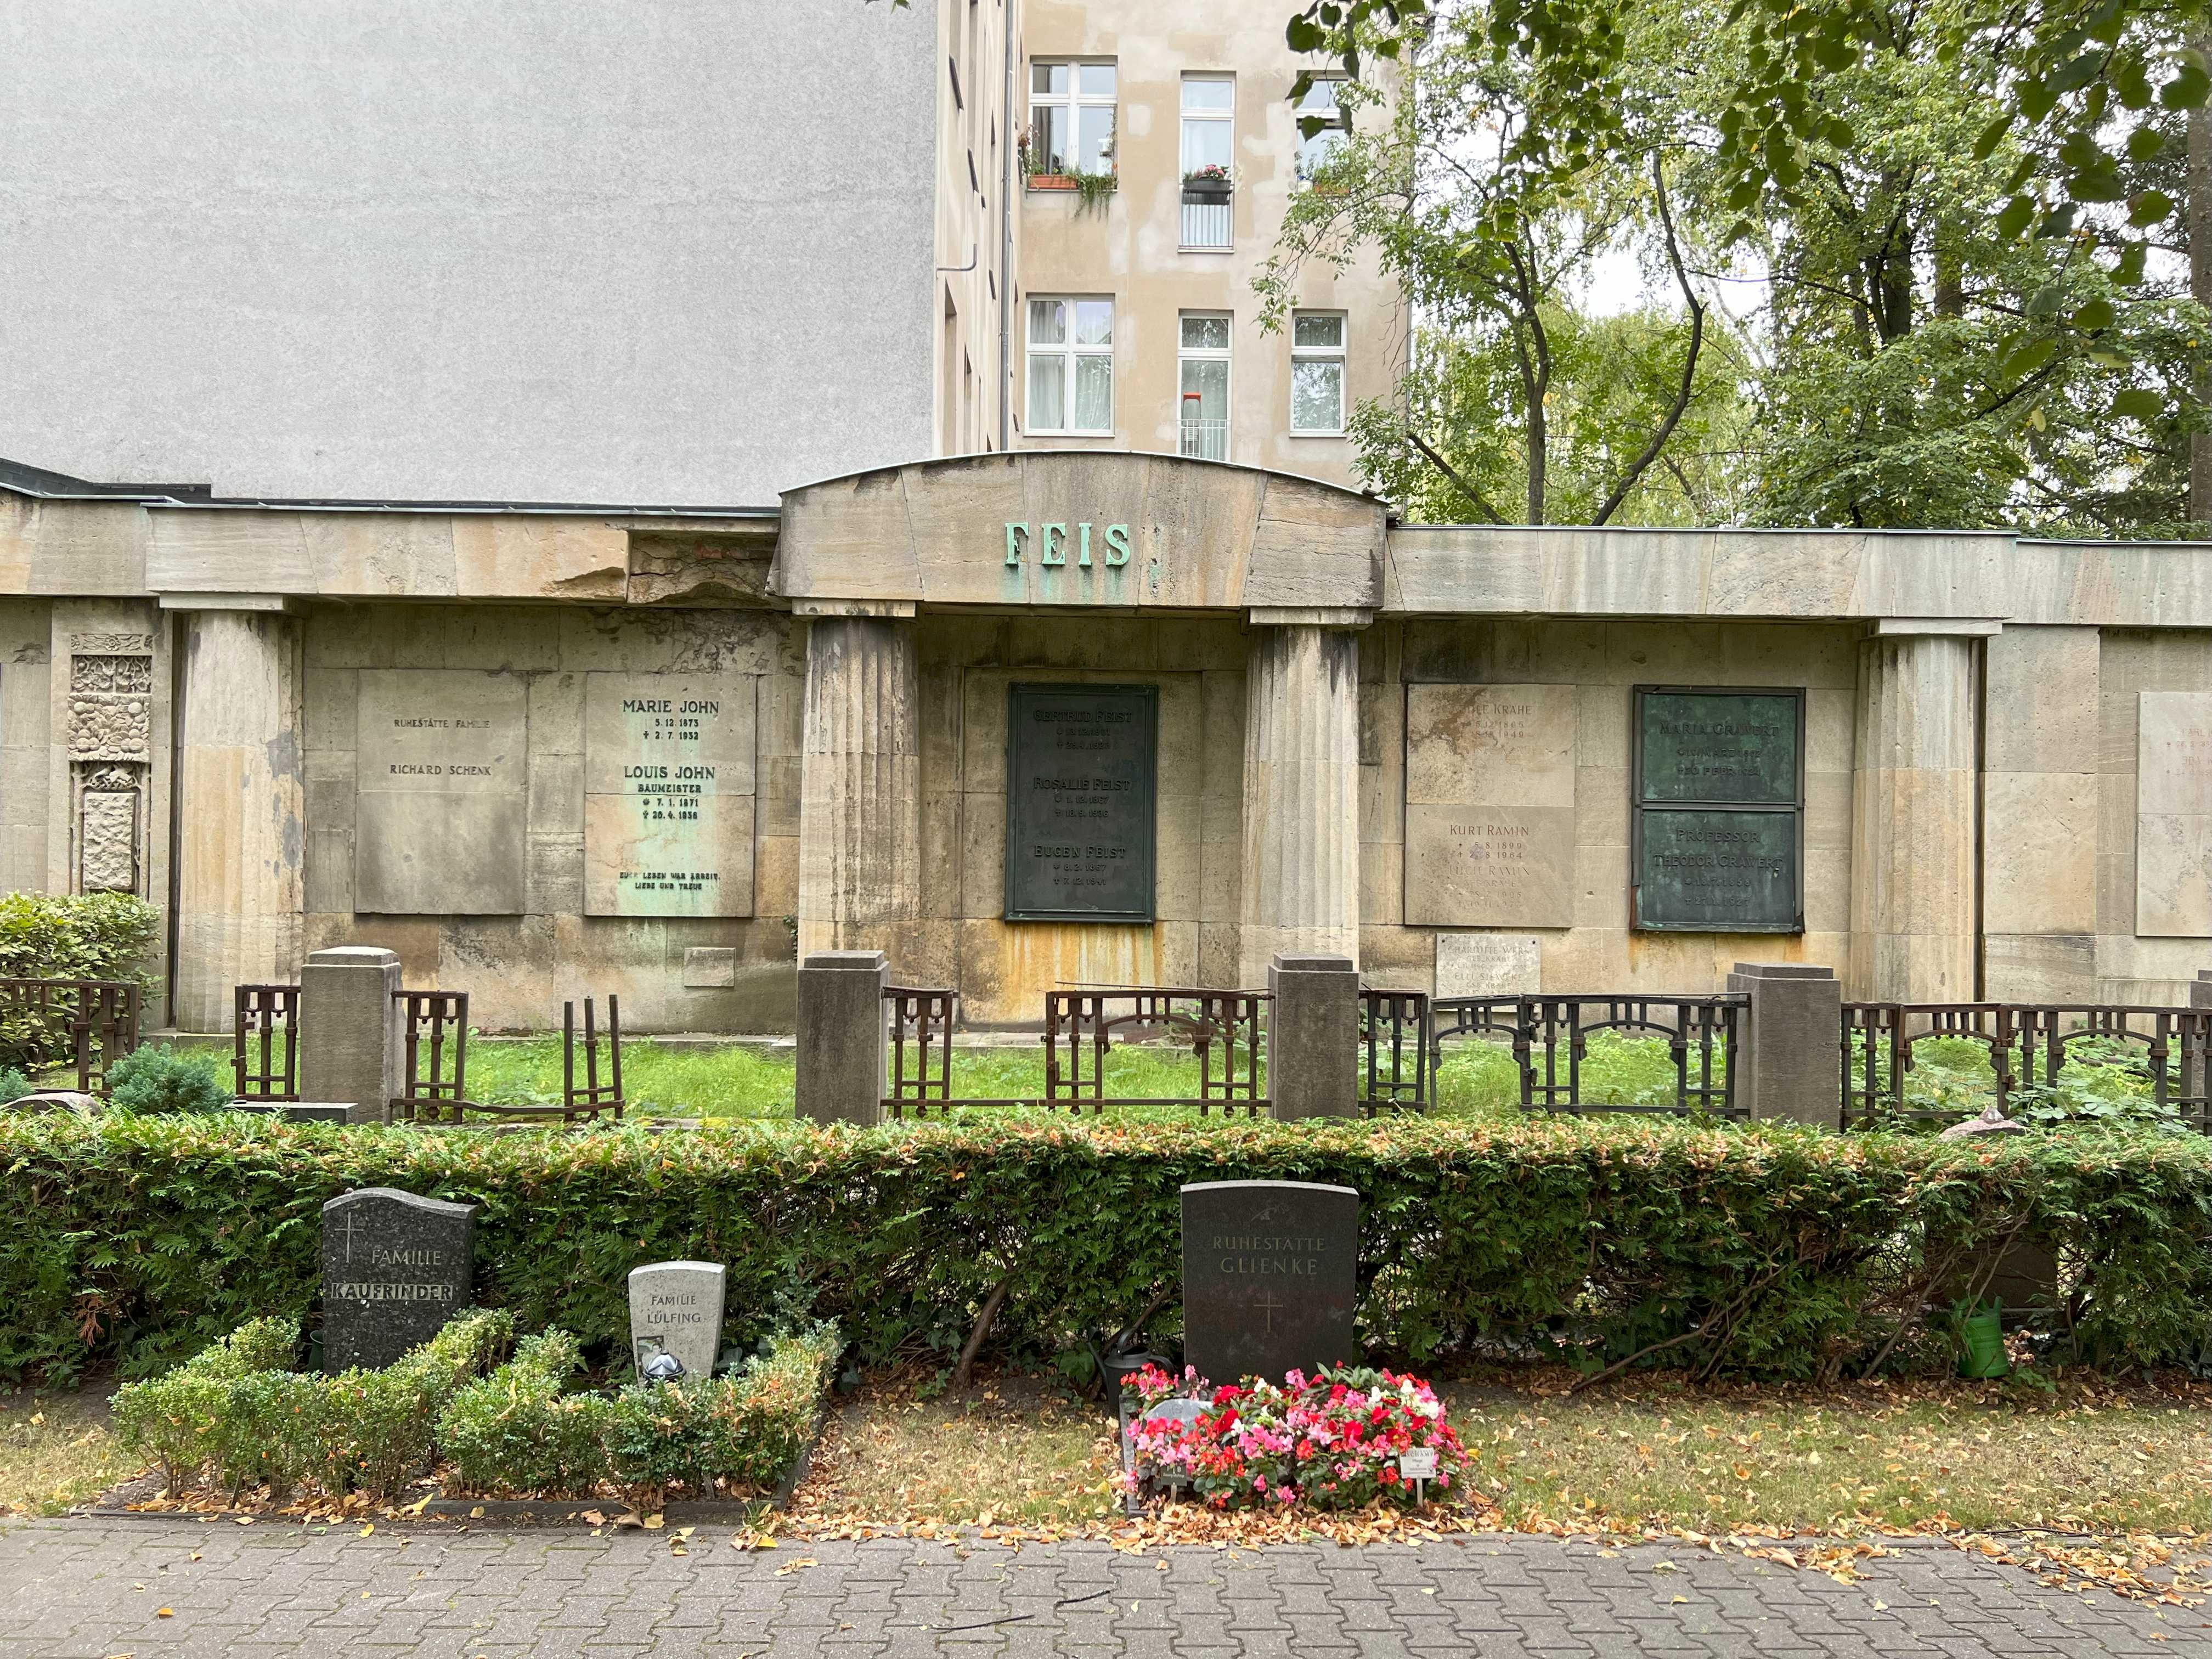 Grabstein Rosalie Feist, Friedhof Wilmersdorf, Berlin